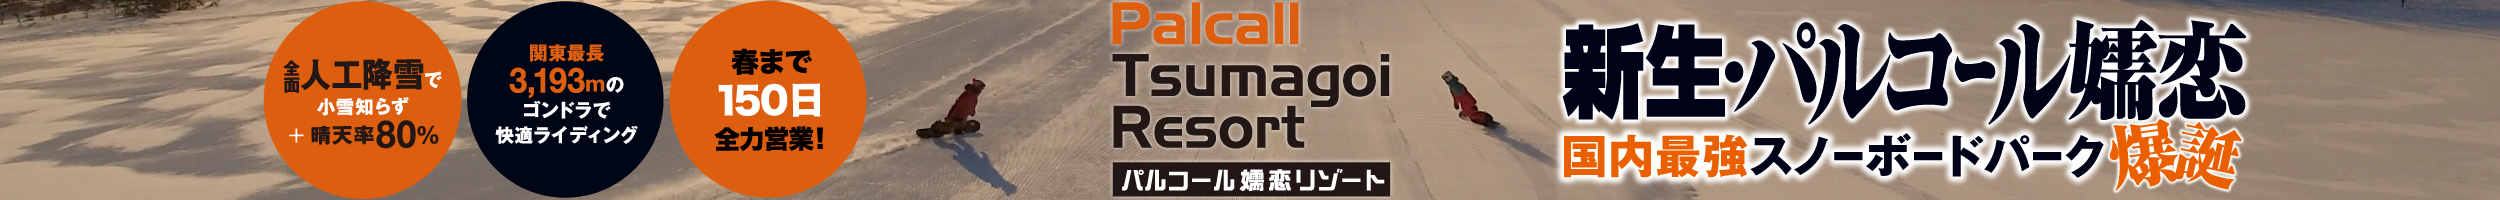 Palcall Tsumagoi